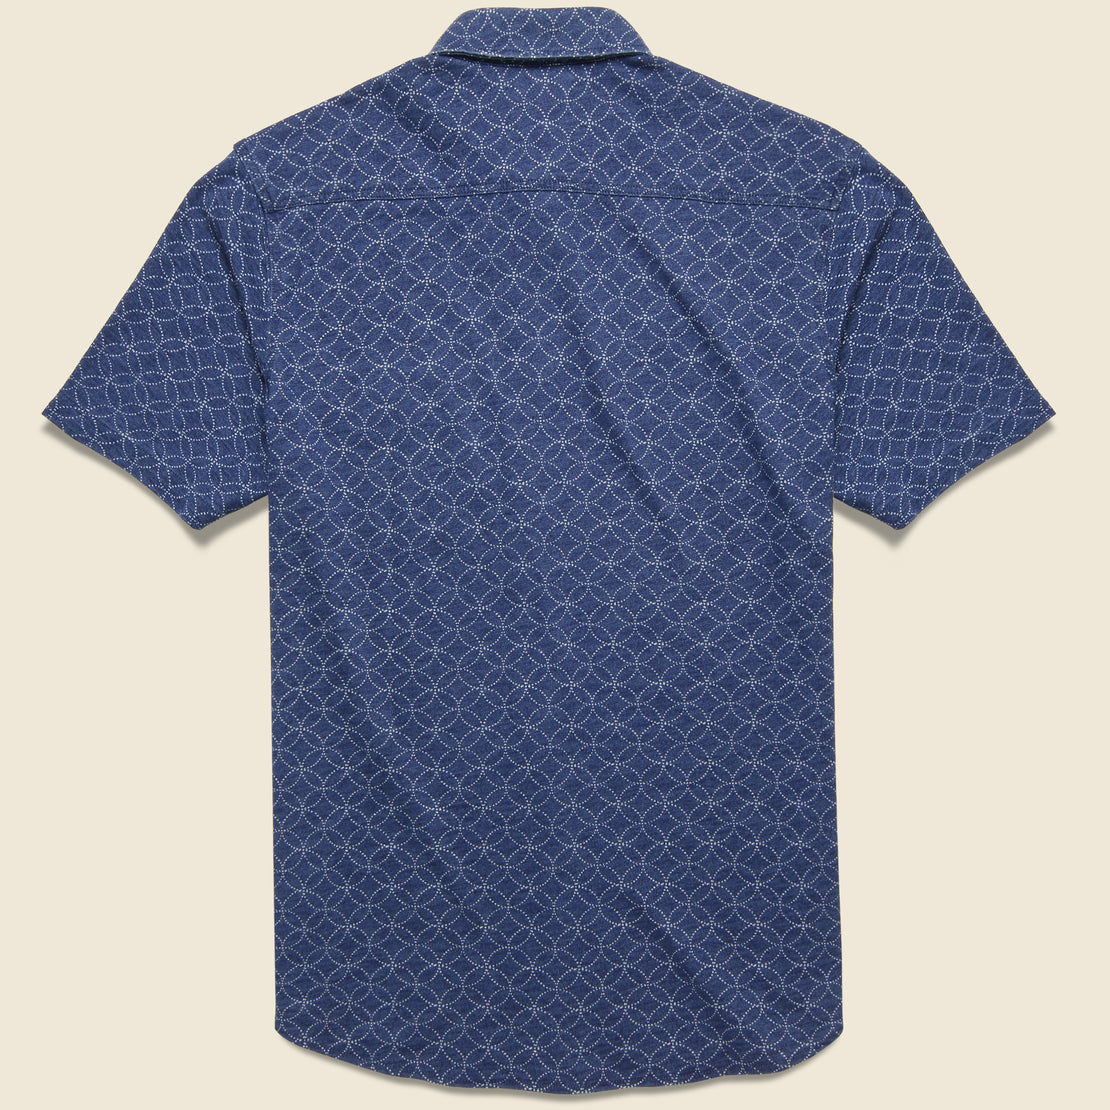 Knit Seasons Shirt - Moonlight Batik